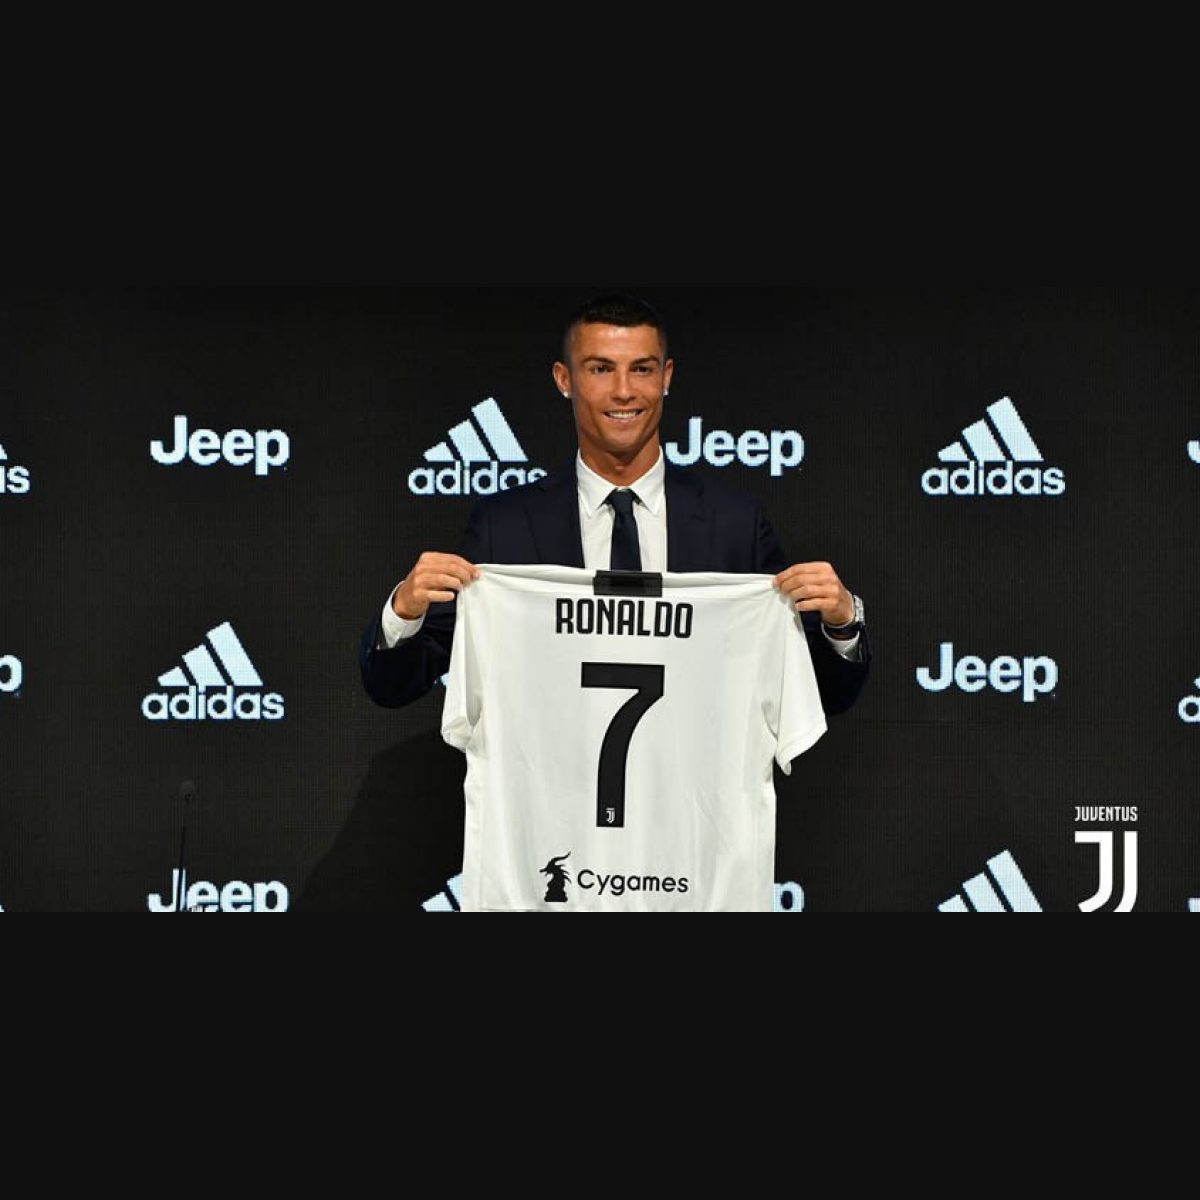 Ronaldo's Juventus Jersey Sells 520,000 Units